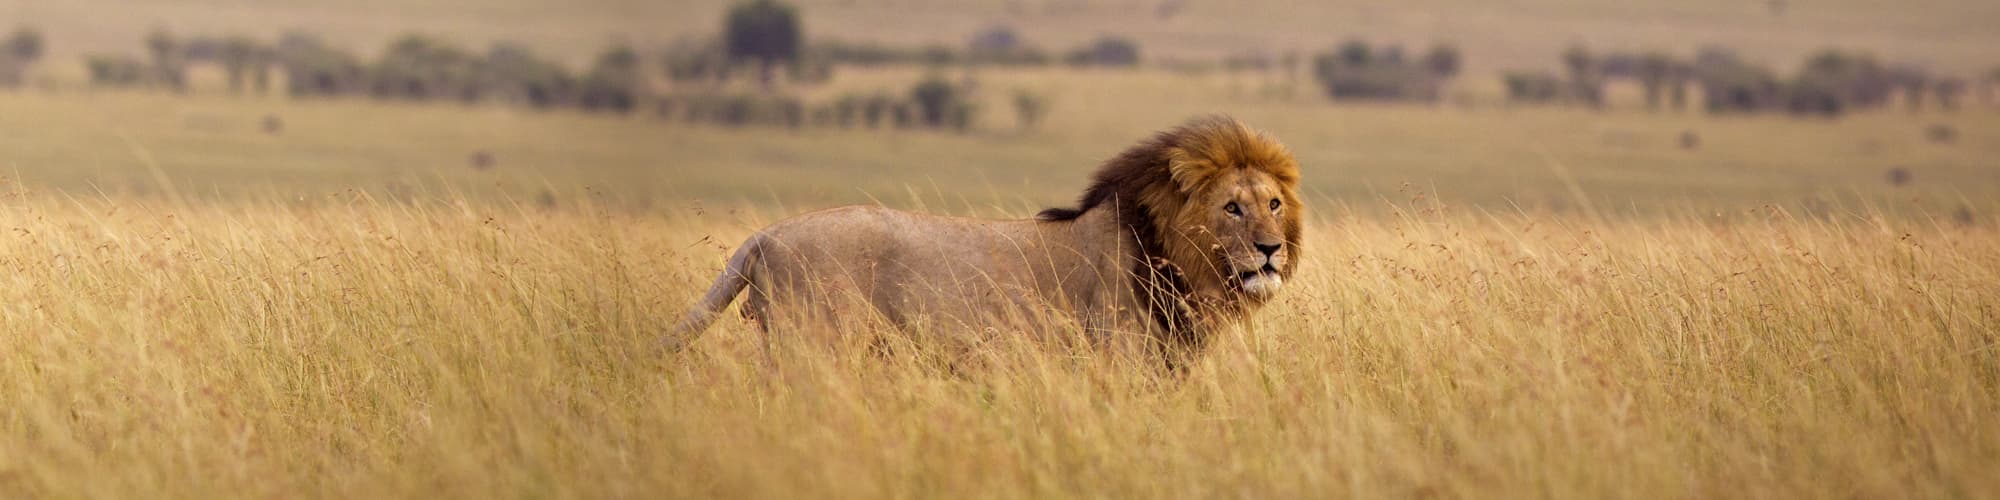 Safari au Kenya : circuit, trek et voyage © WL Davies / Istock